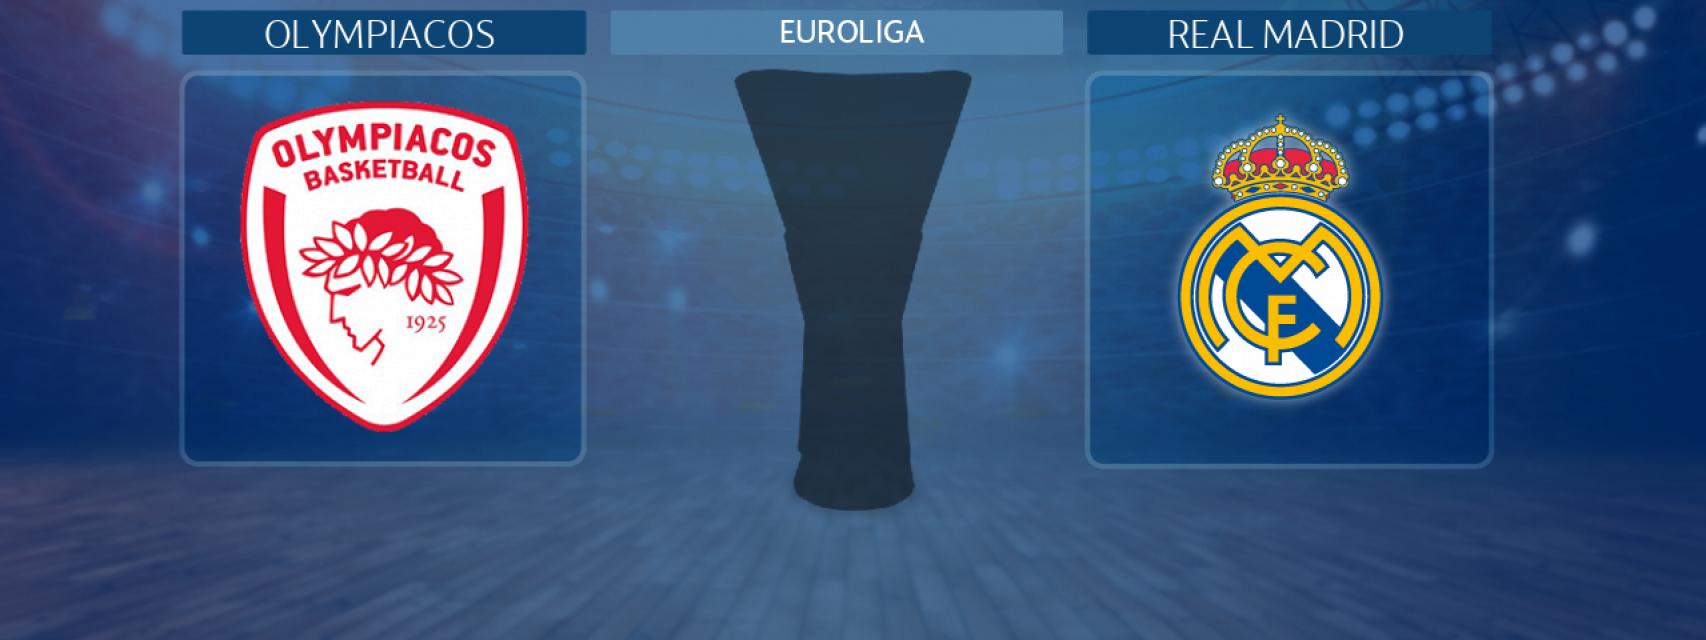 Olympiacos - Real Madrid, partido de la Euroliga